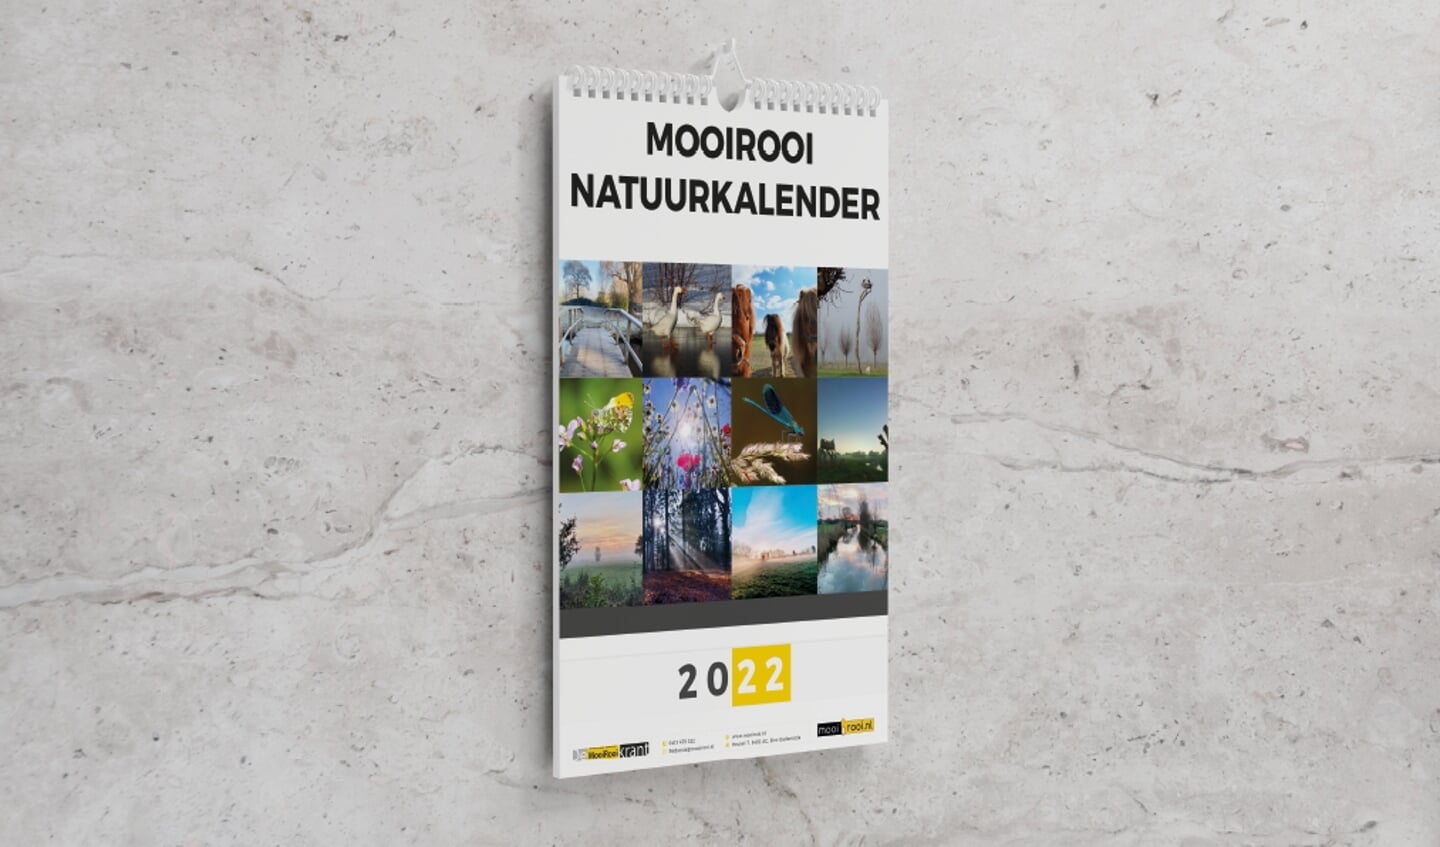 De MooiRooi natuurkalender van 2022.